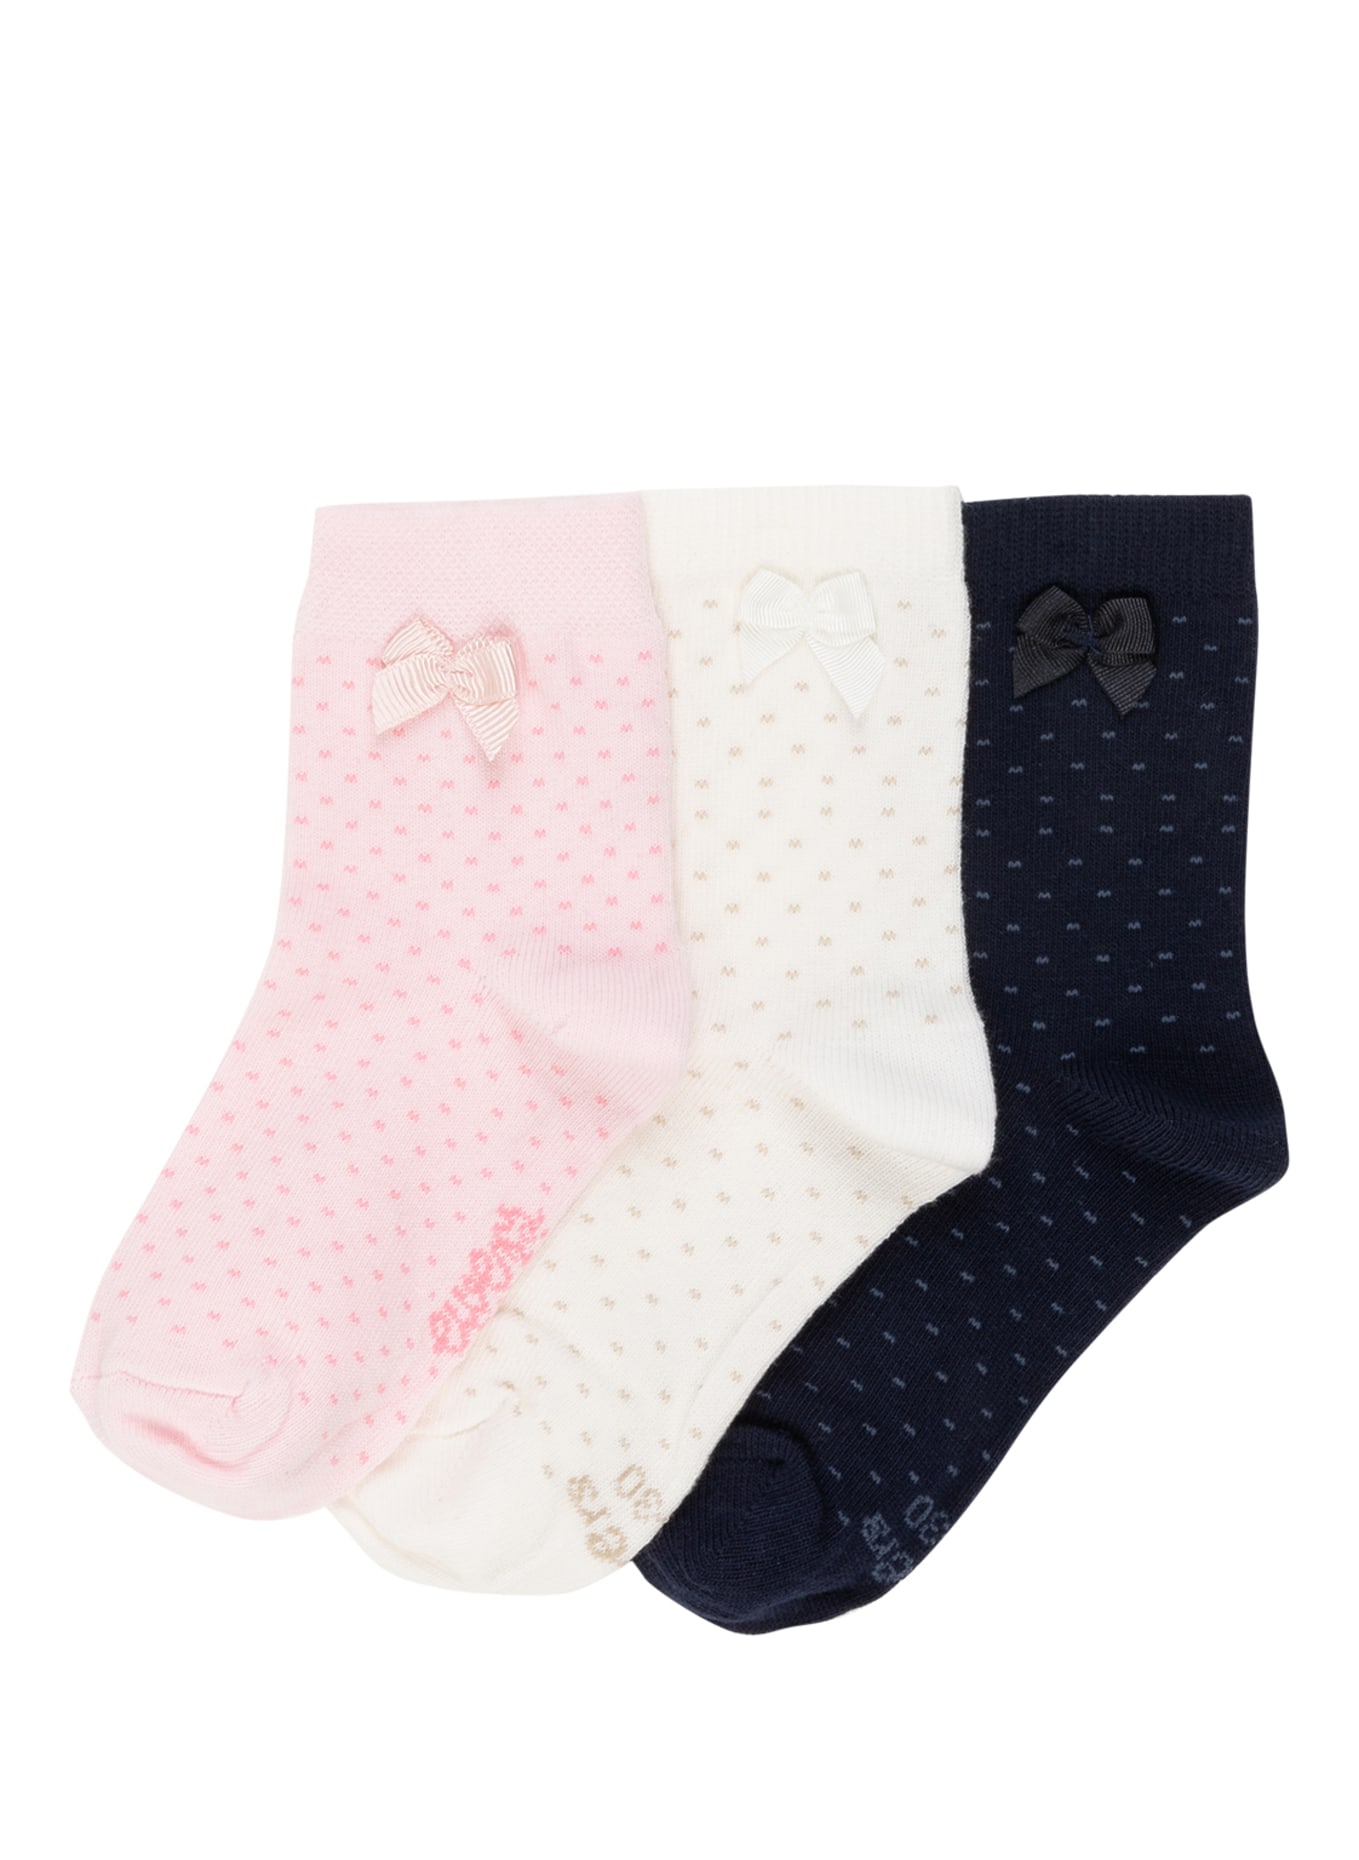 ewers COLLECTION Ponožky, 3 páry v balení, Barva: 8010 8010 latte, baby-rose, navy (Obrázek 1)